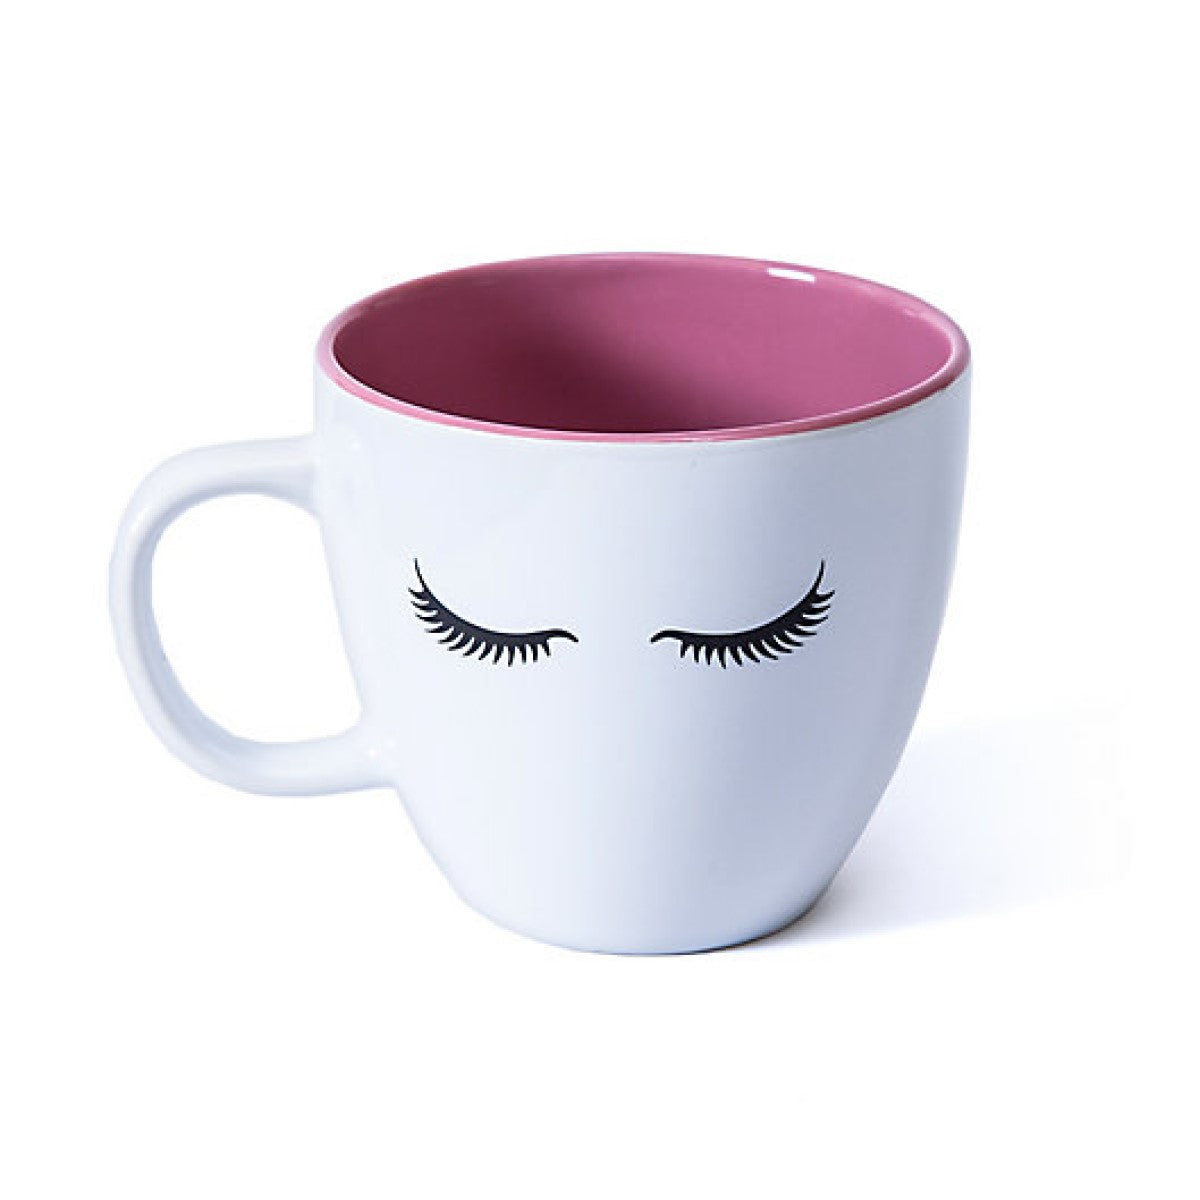 Eyelashes Coffee Mug – Beverly Hills Lashes